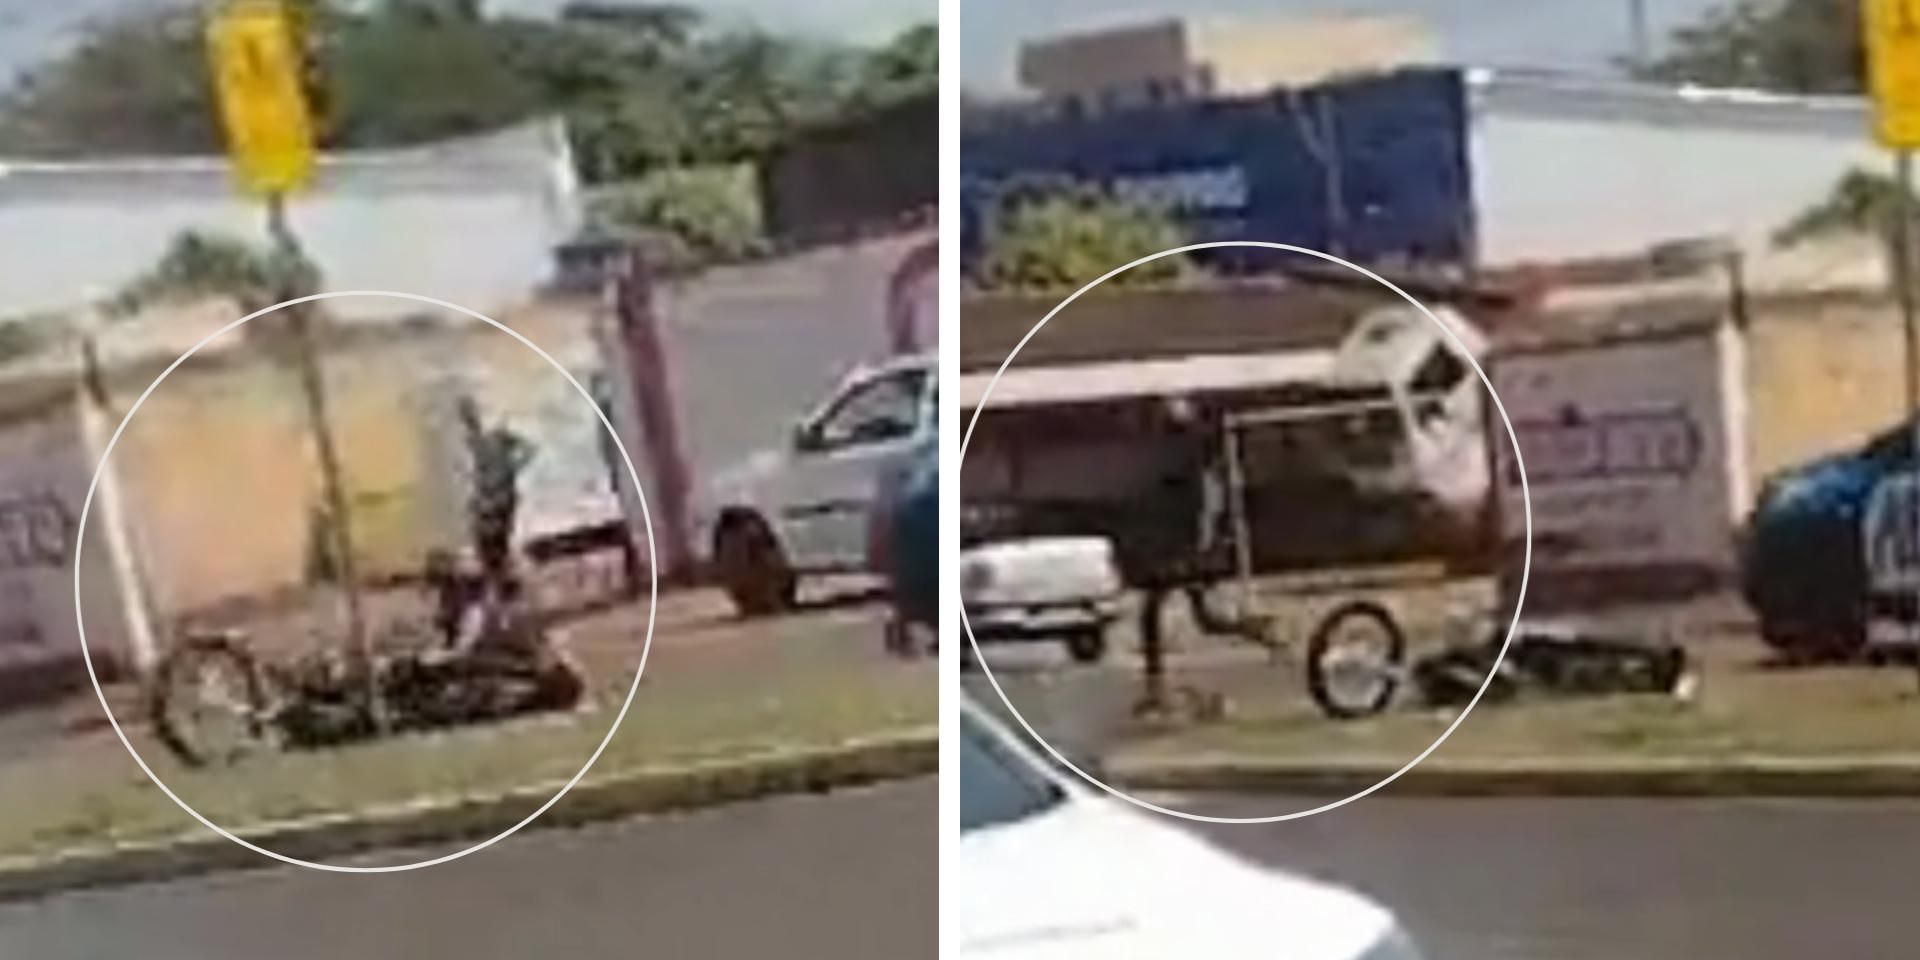 Vídeo mostra perseguição policial a motociclista empinando moto em avenida  de Inhumas, Trânsito GO